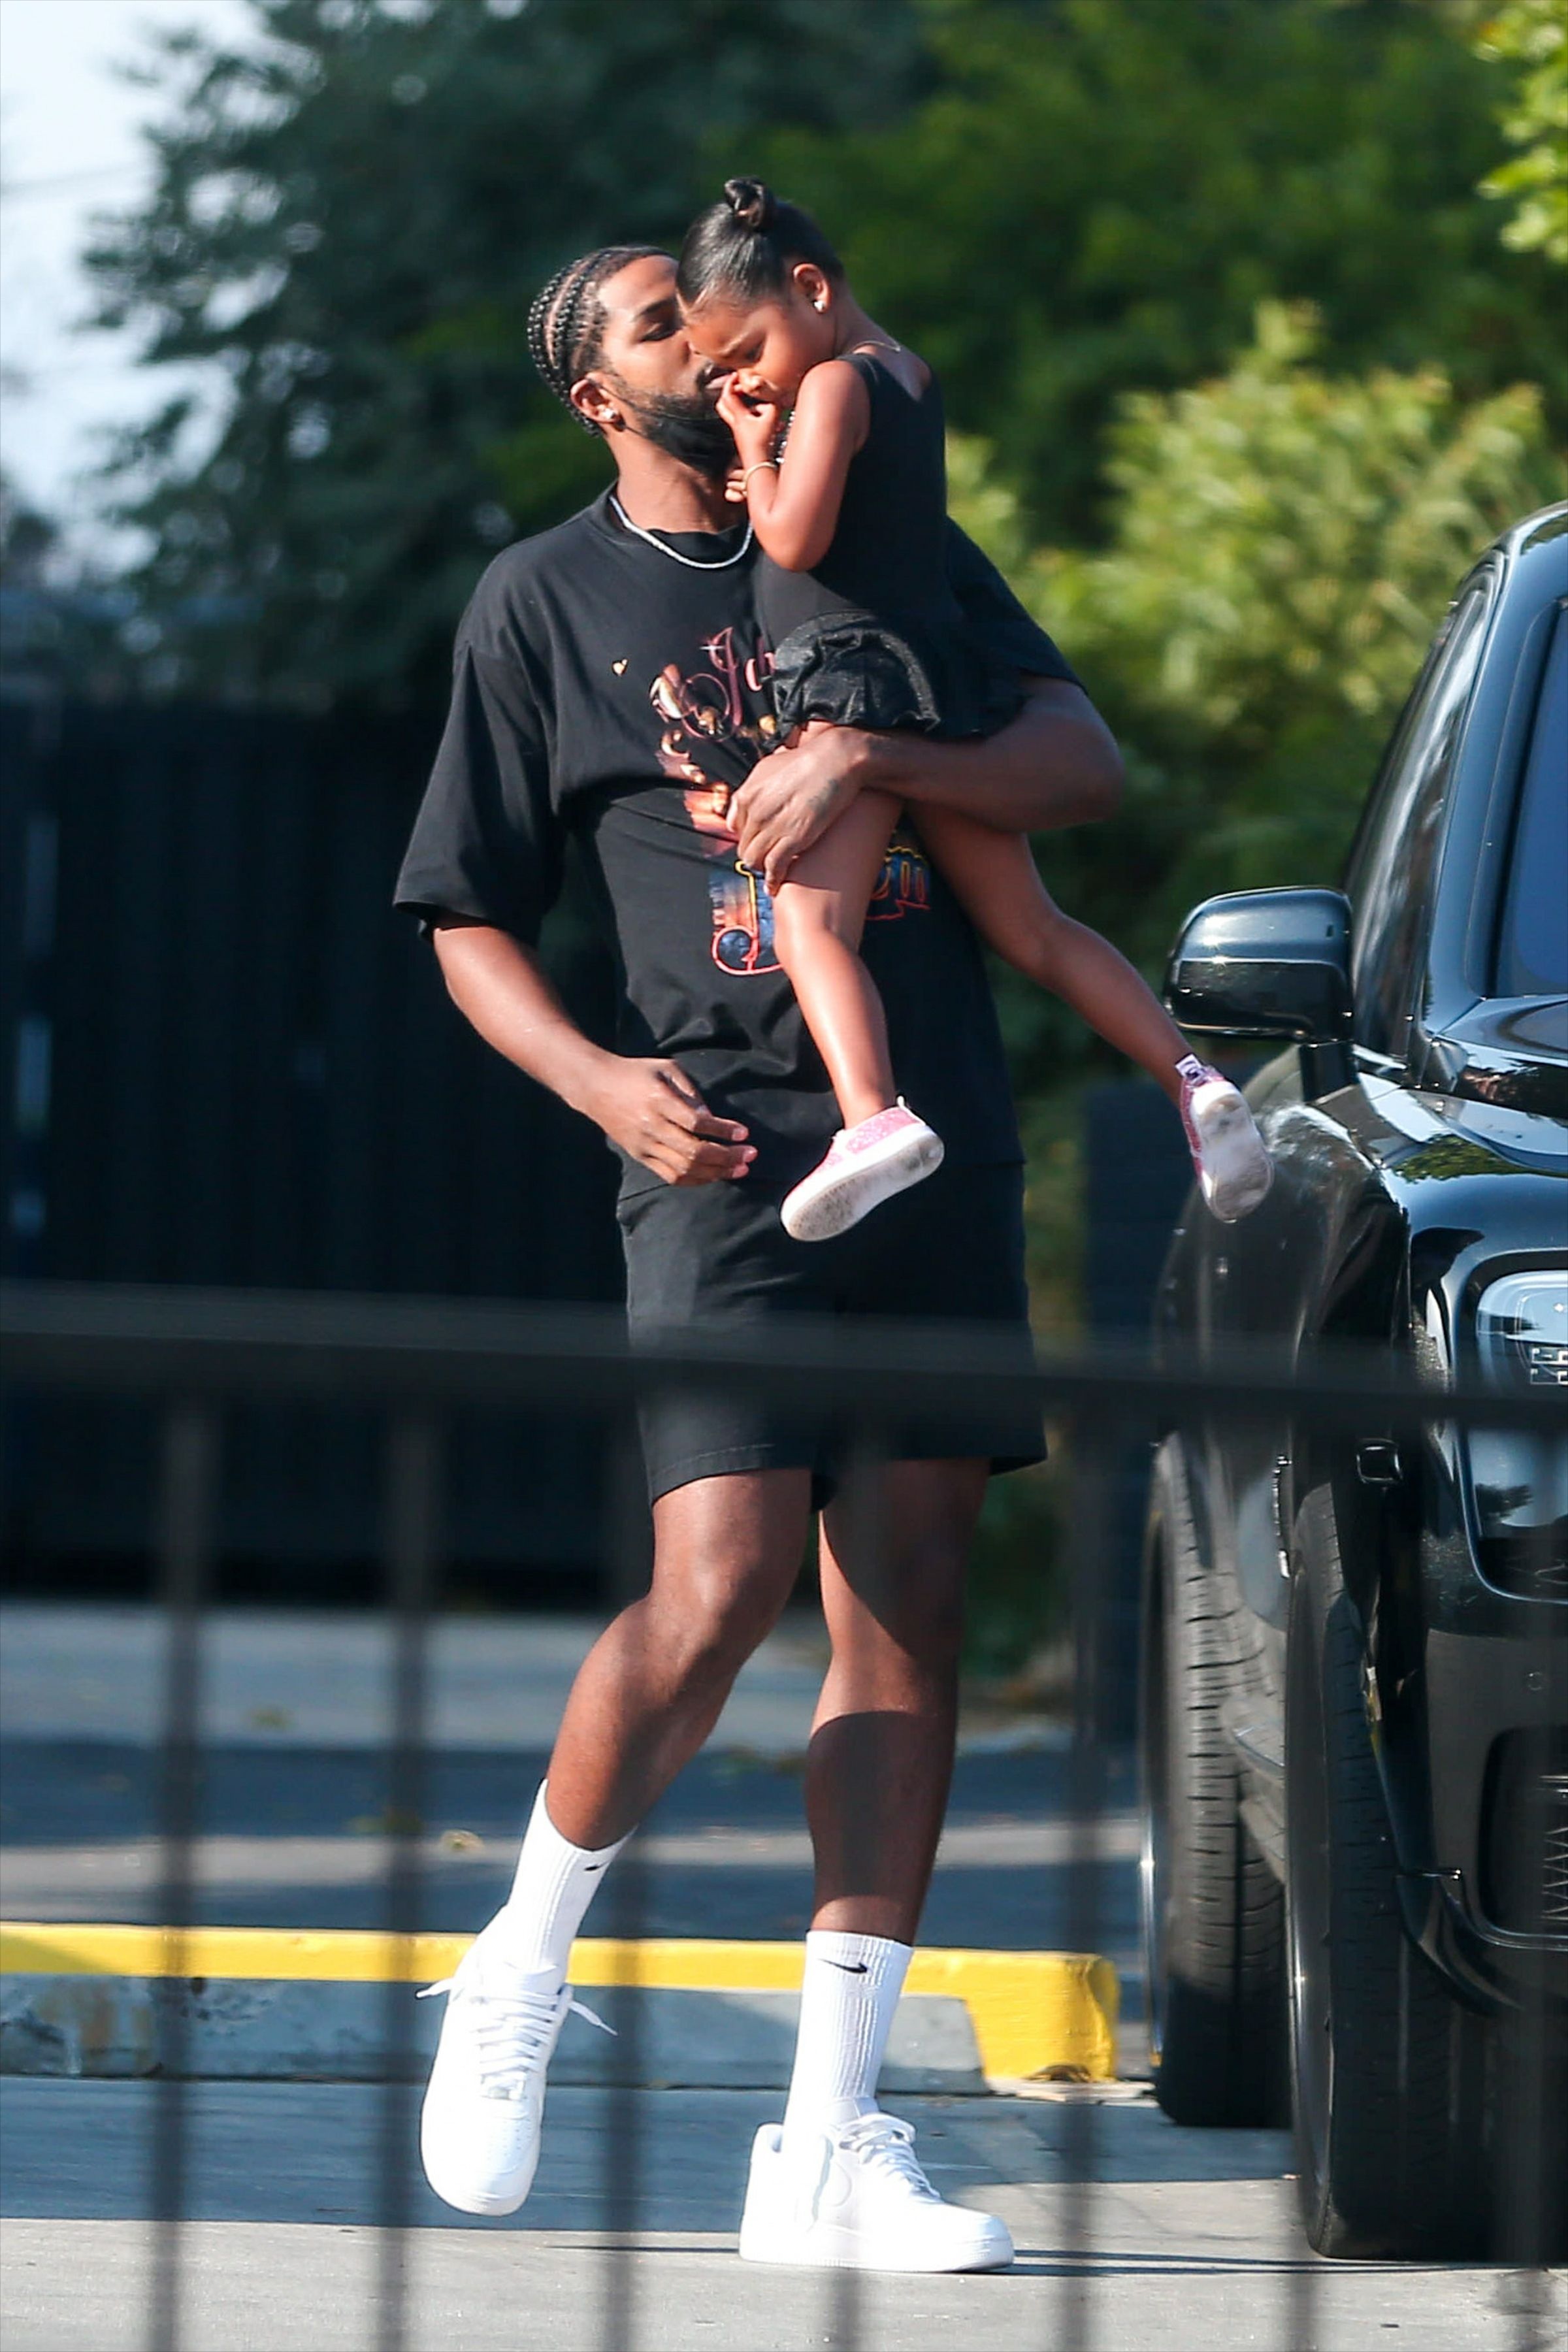 Aqui está o que sabemos sobre a paternidade de Tristan Thompson de seus filhos com Khloé Kardashian